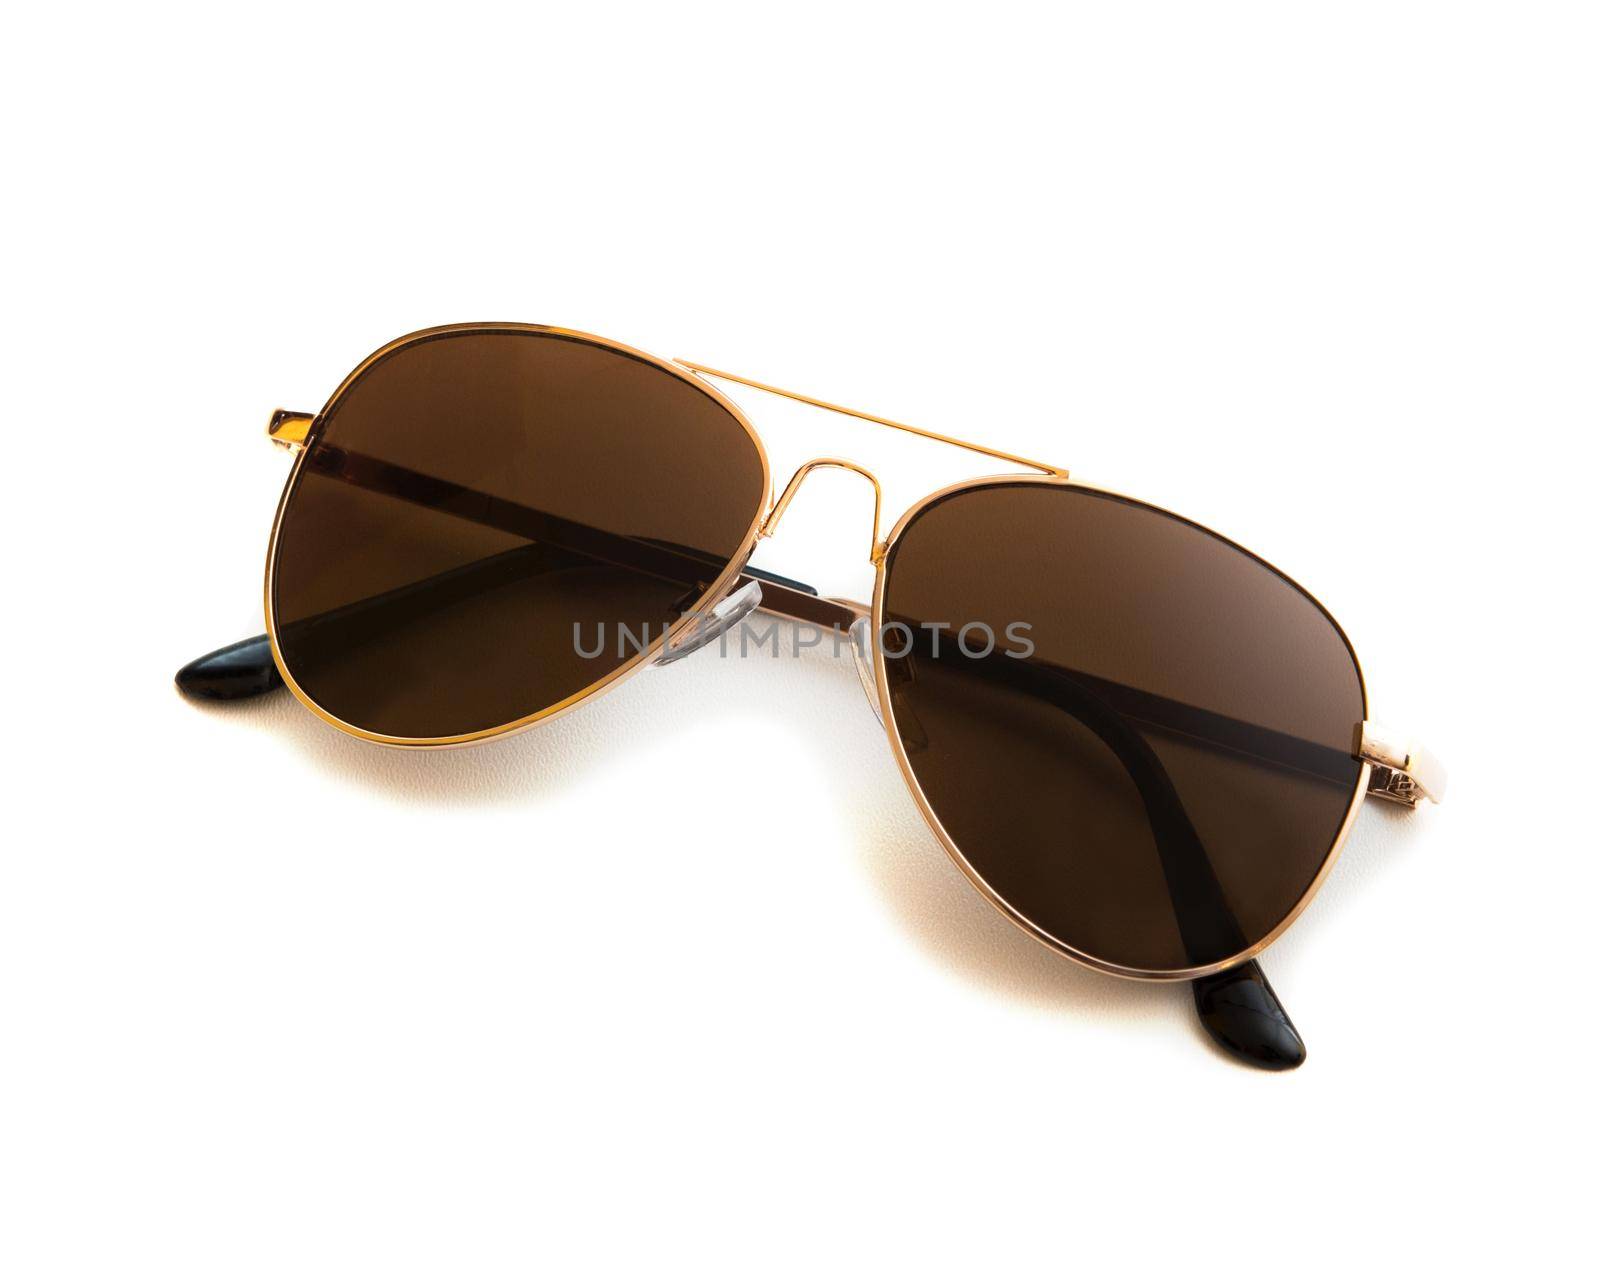 Aviator sunglasses by tan4ikk1